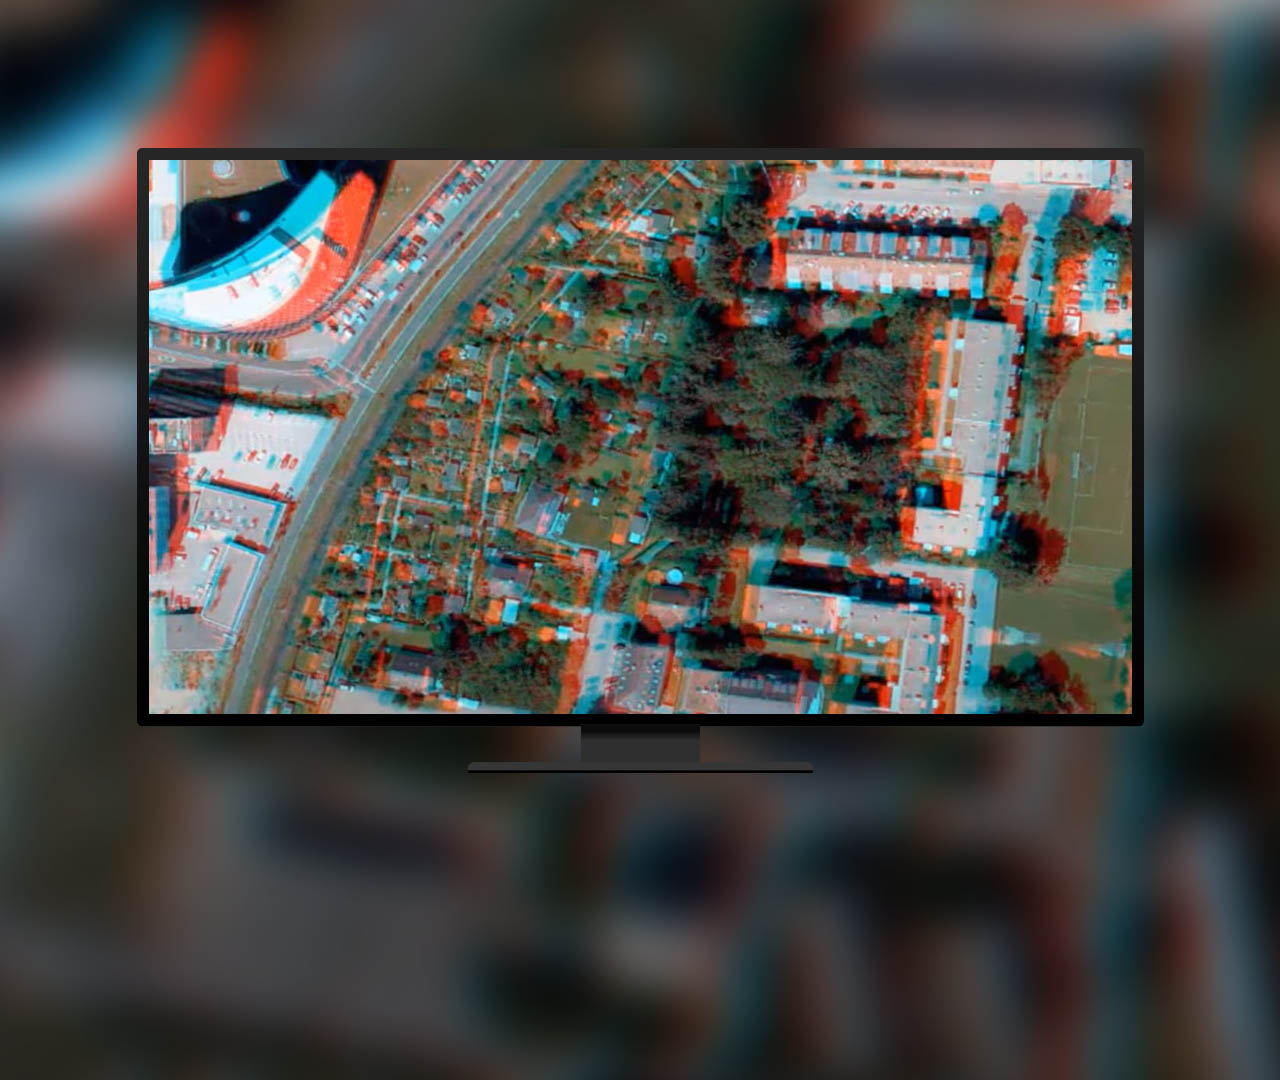 Luftbild von einem Gebäude mit Halo in Blau und Rot, für das Stereoanzeigefunktionen verwendet werden